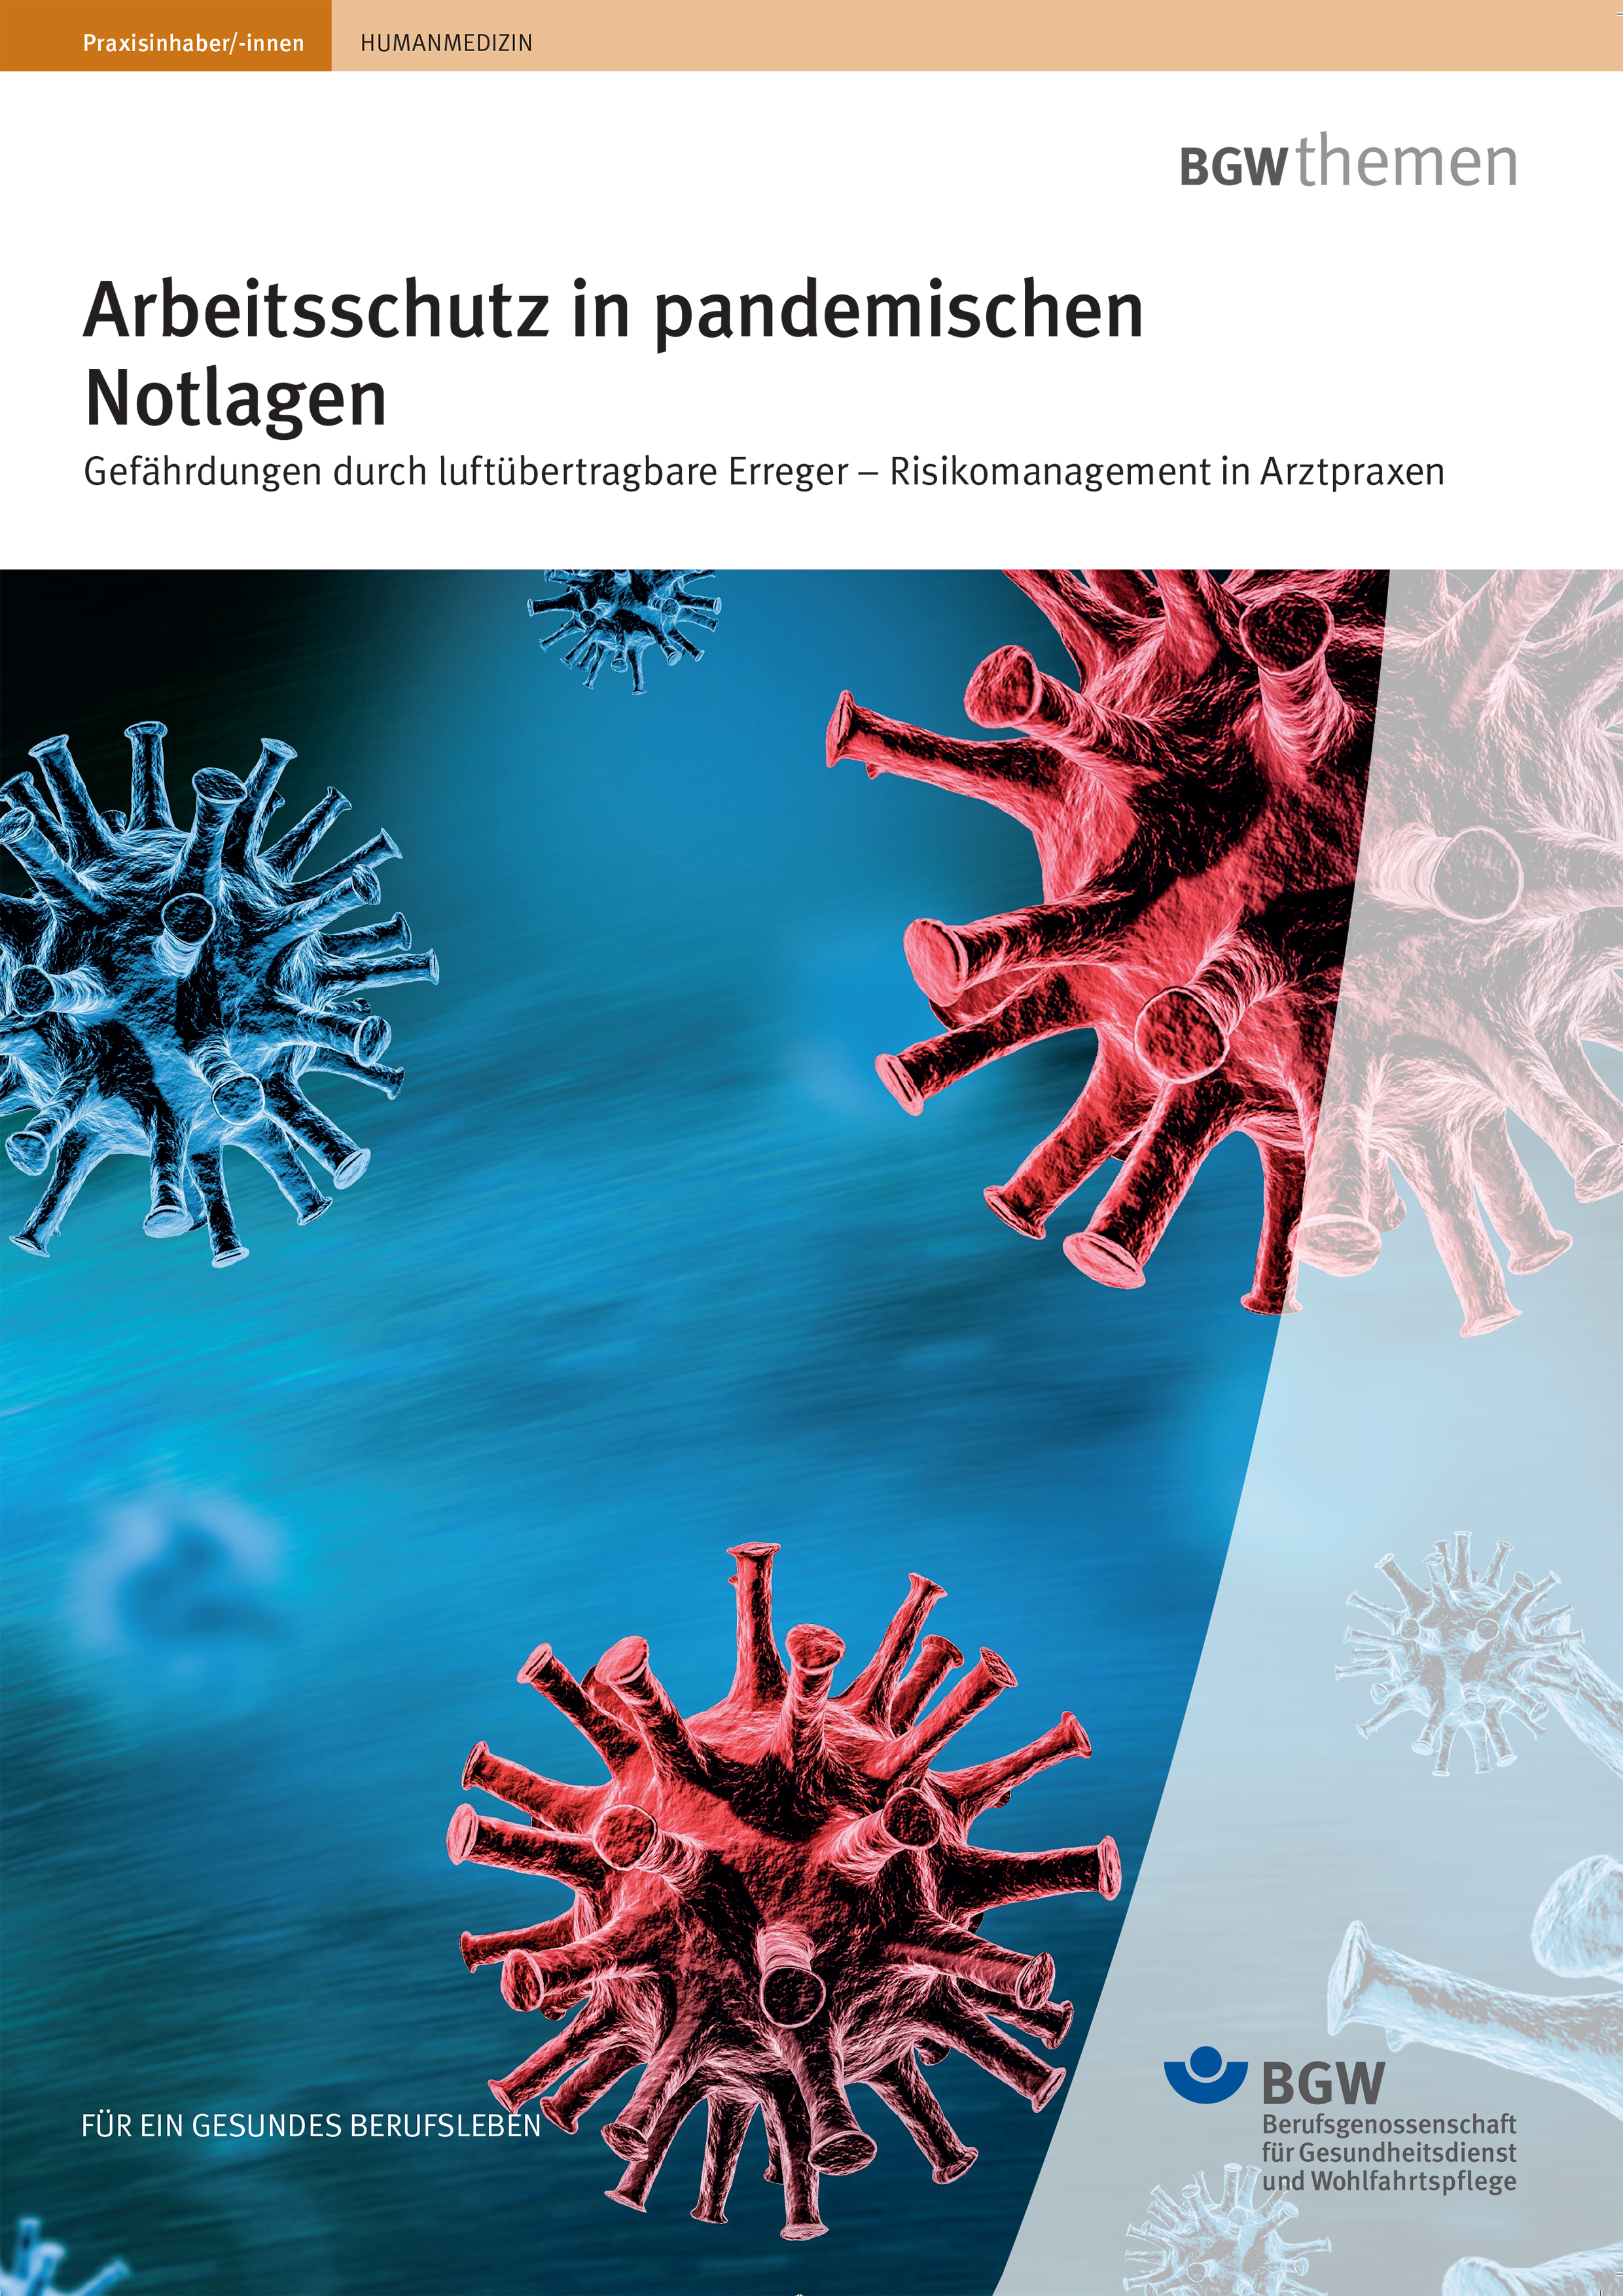 Titel: "Arbeitsschutz in pandemischen Notlagen" - Coronaviren schweben durch den Raum